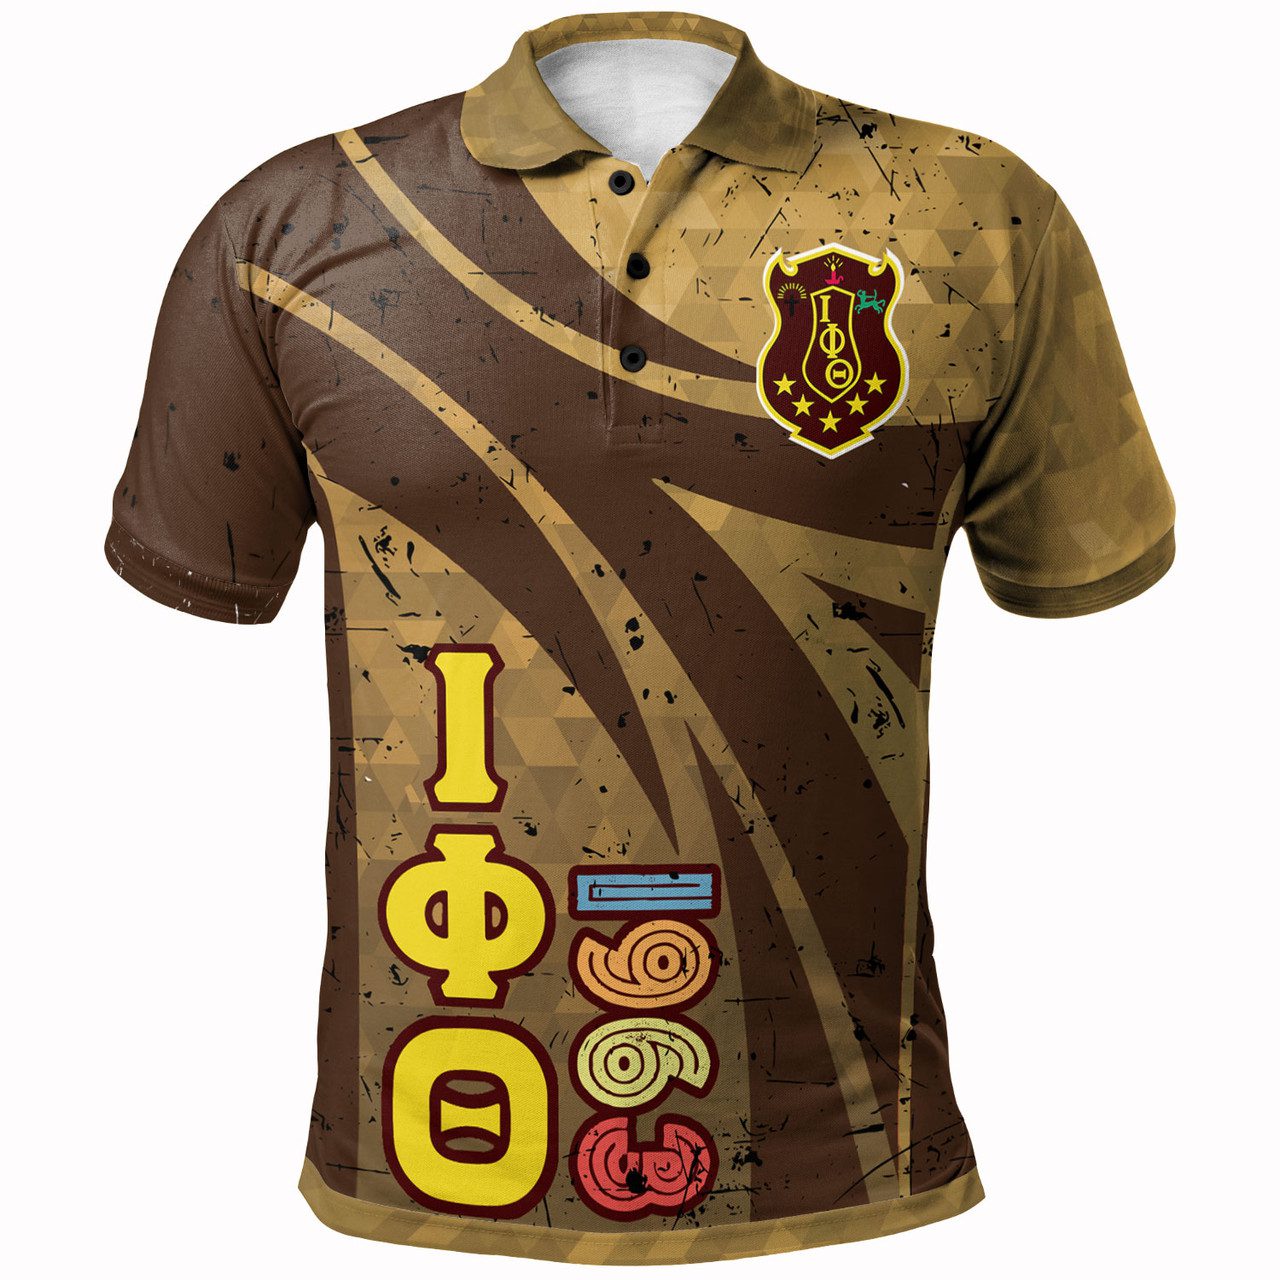 Iota Phi Theta Polo Shirt – Iota Phi Theta Fraternity 1963